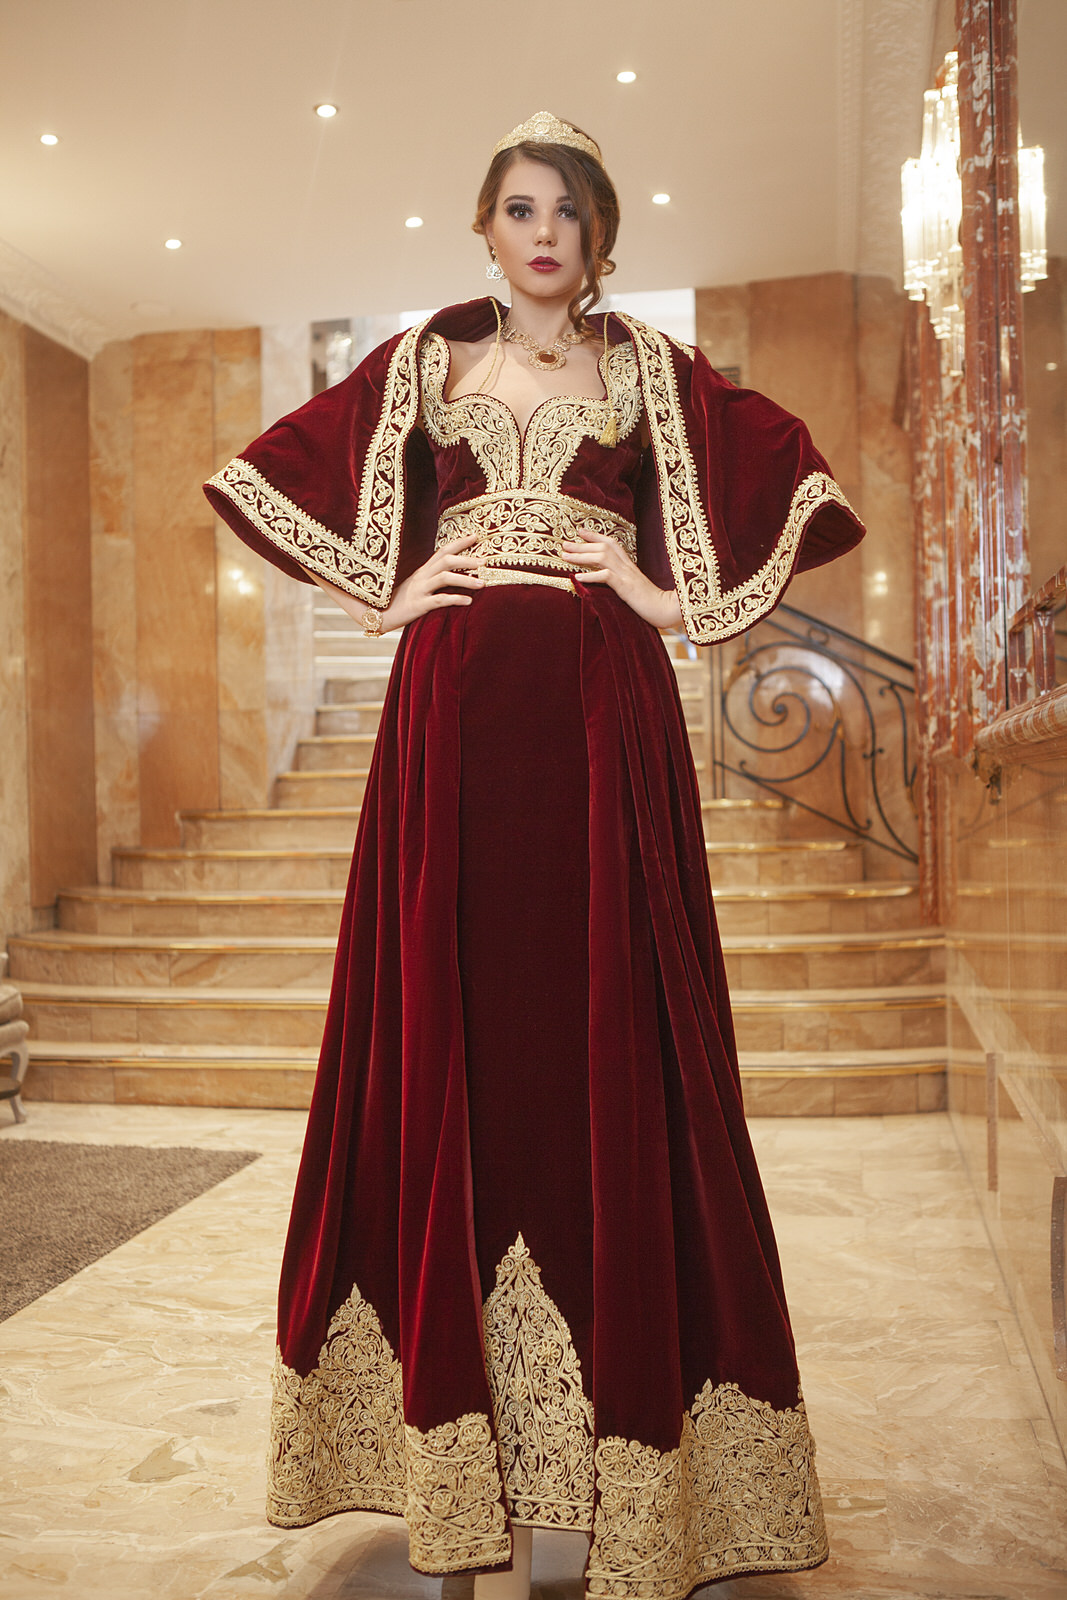 Robe Constantinoise Haute-Couture travaillée entièrement au fil d'or avec une traîne et cape amovible.